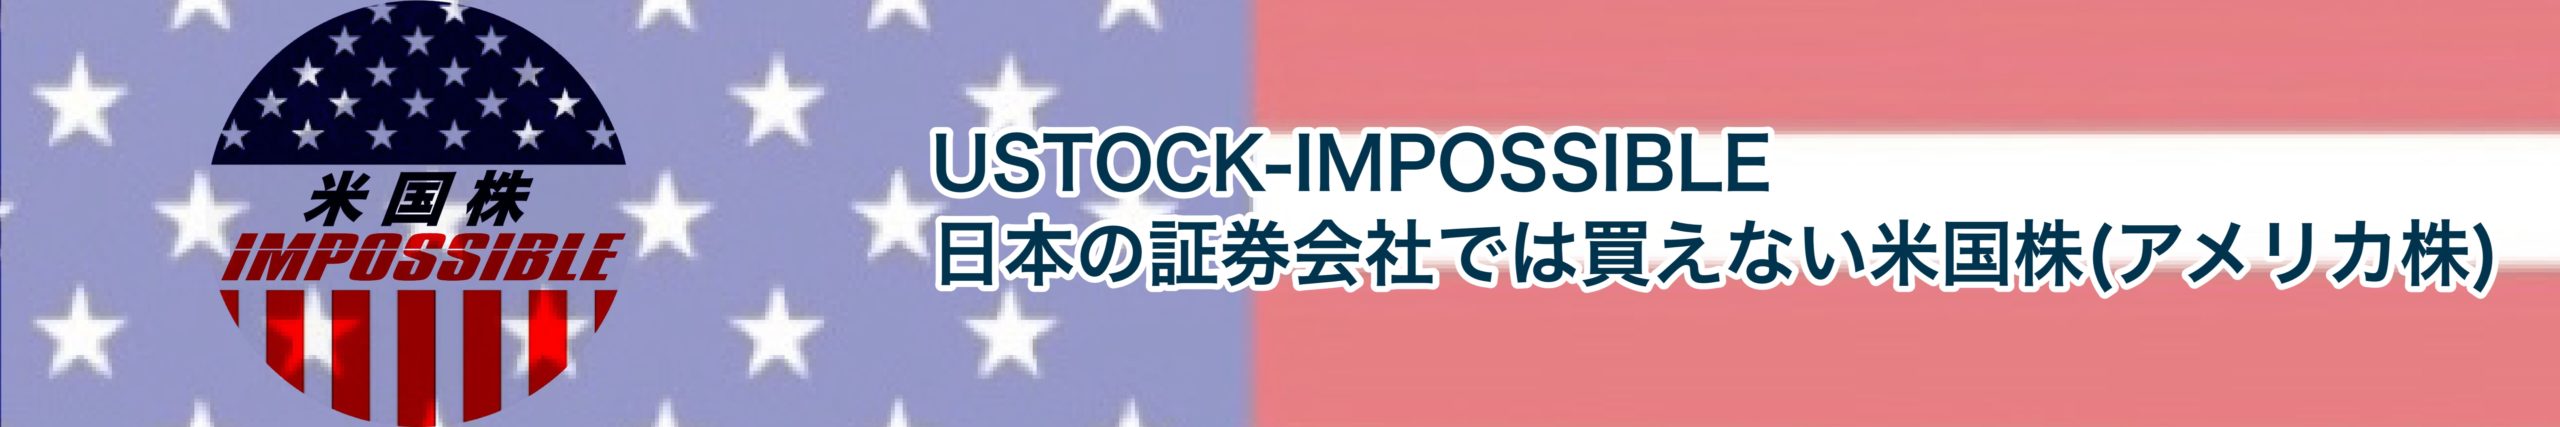 USTOCK-IMPOSSIBLE 日本の証券会社では買えない米国株(アメリカ株)